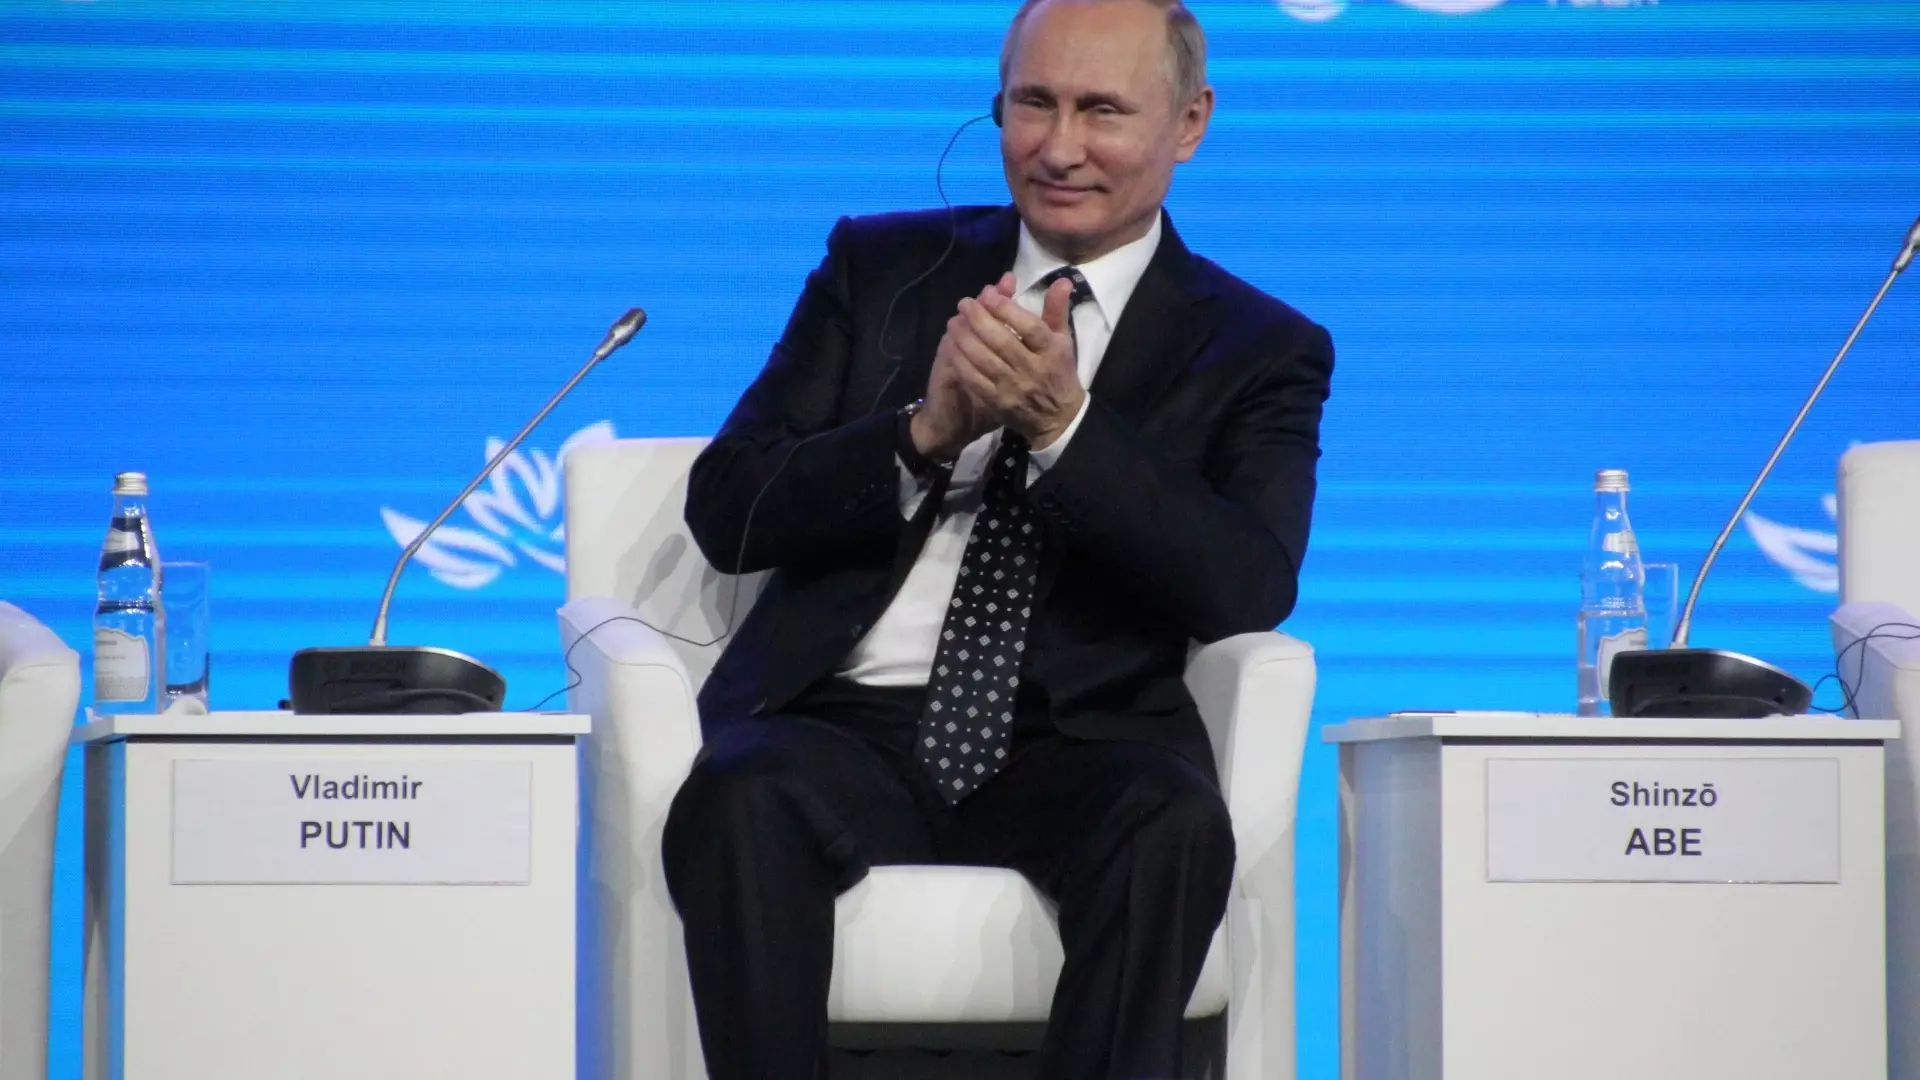 Владимир Путин в пятый раз стал президентом России